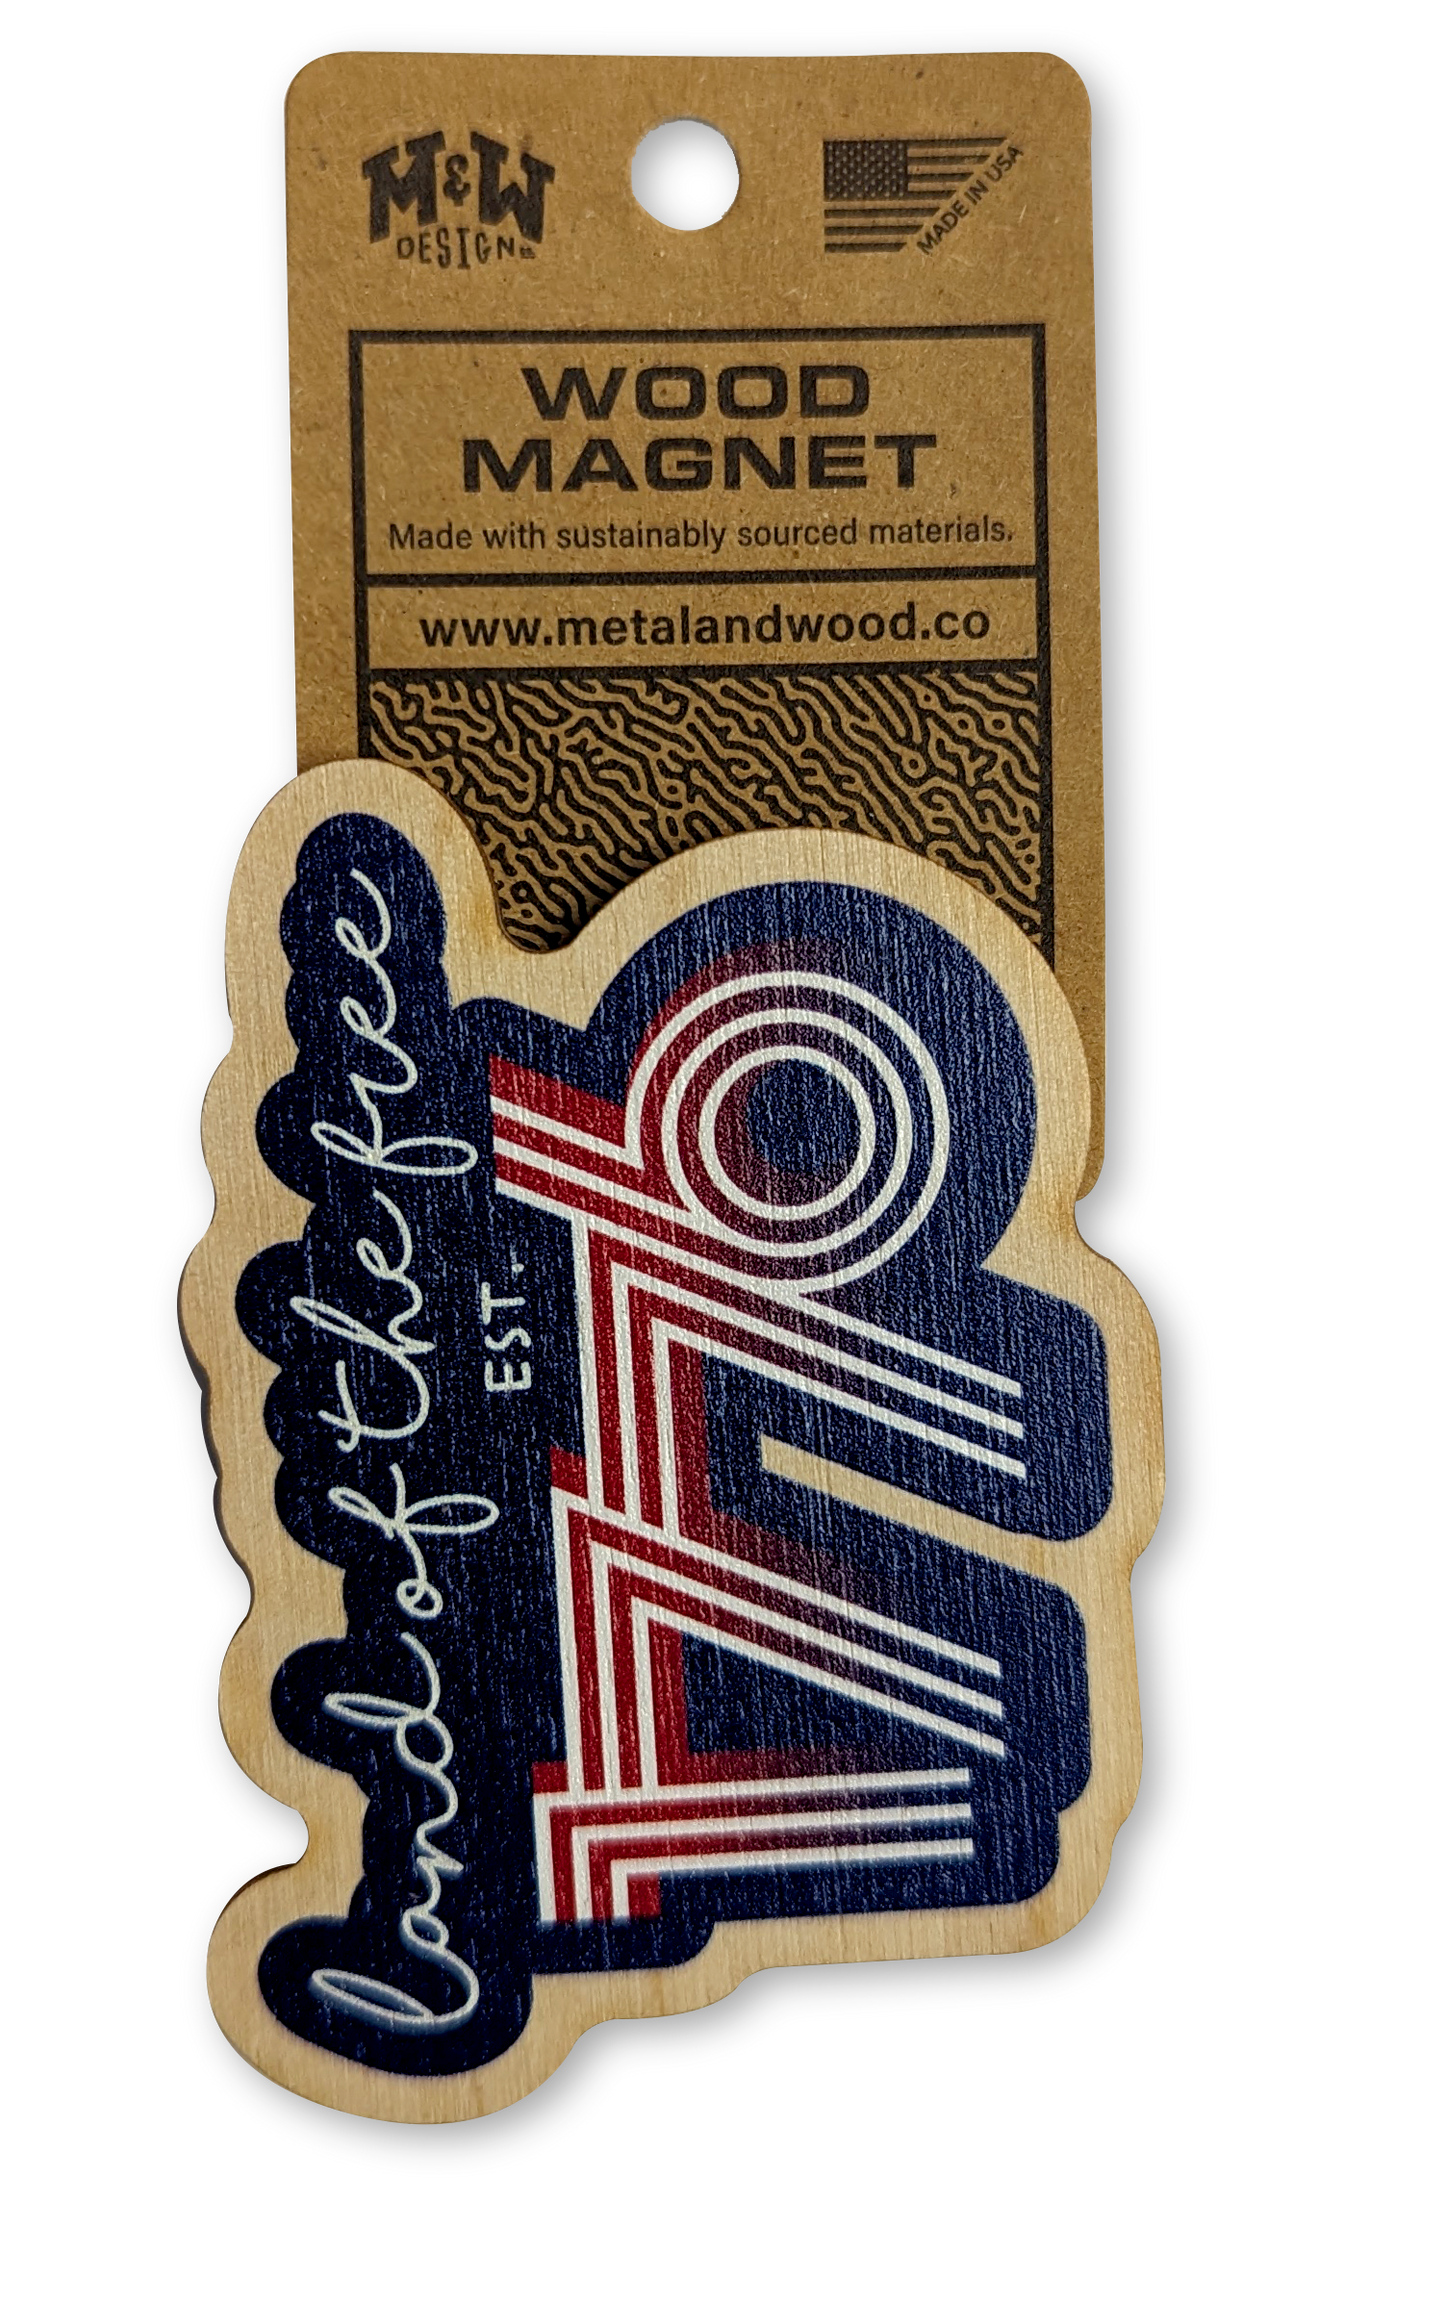 Wood Magnets